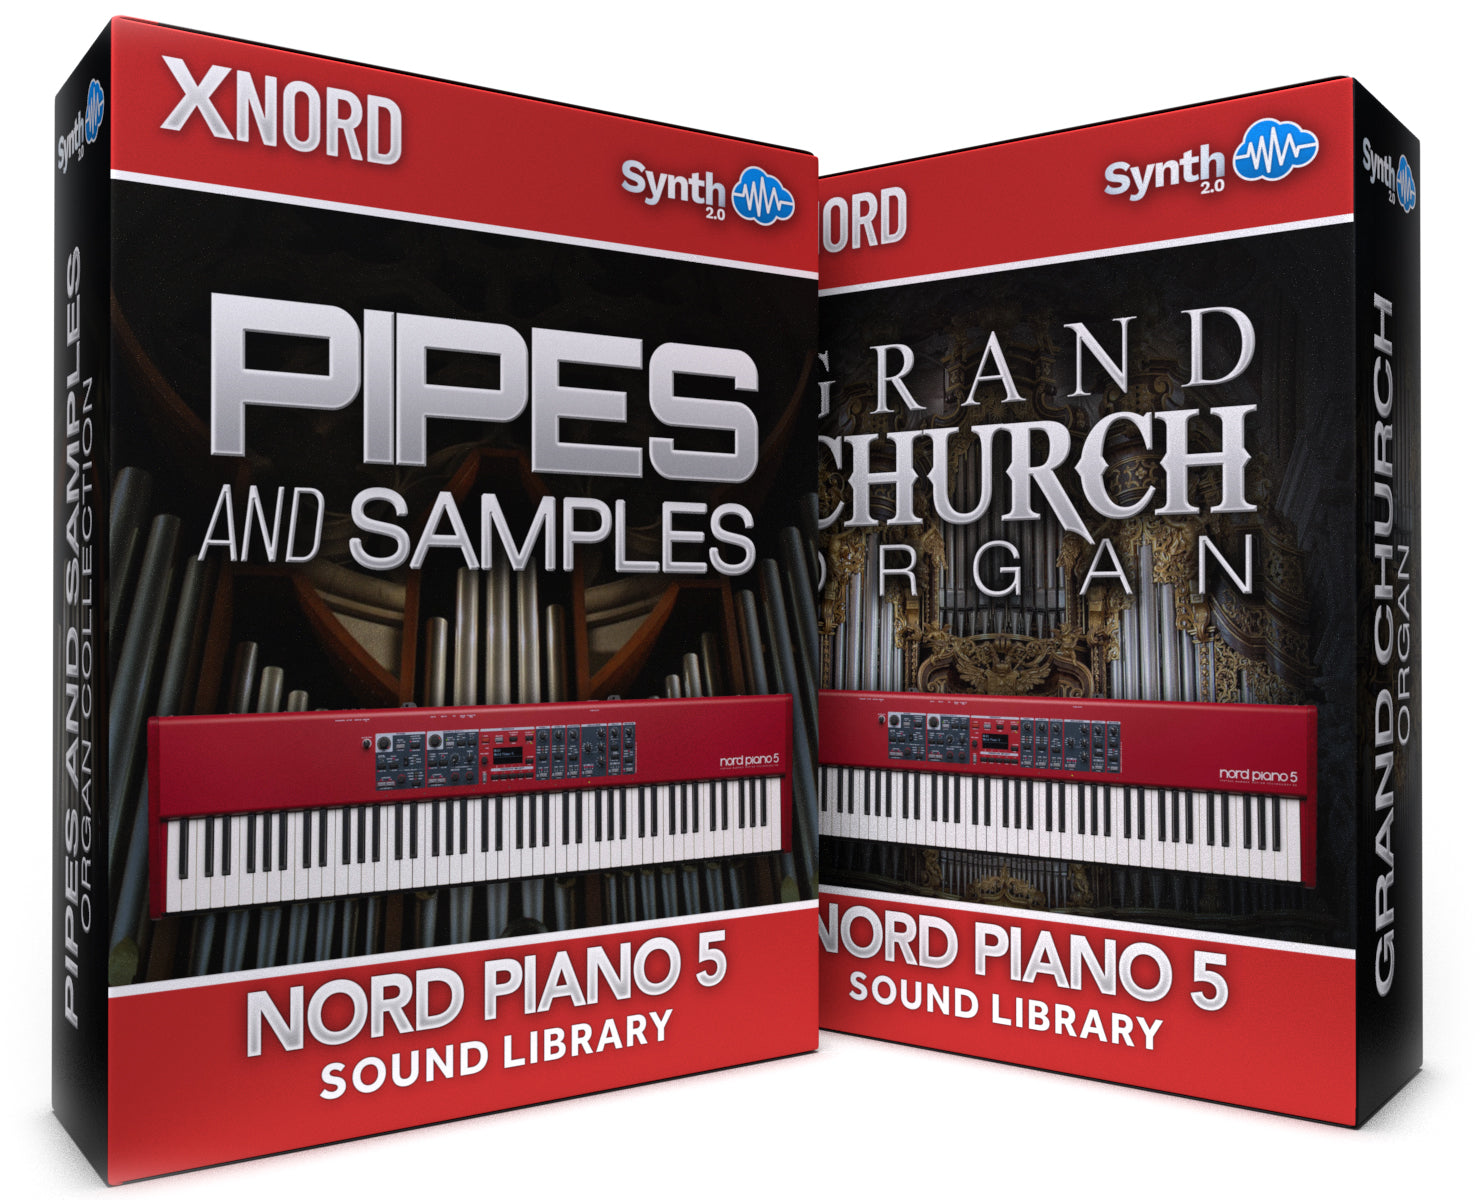 RCL005 - ( Bundle ) - Pipes and Samples + Grand Church Organ - Nord Piano 5